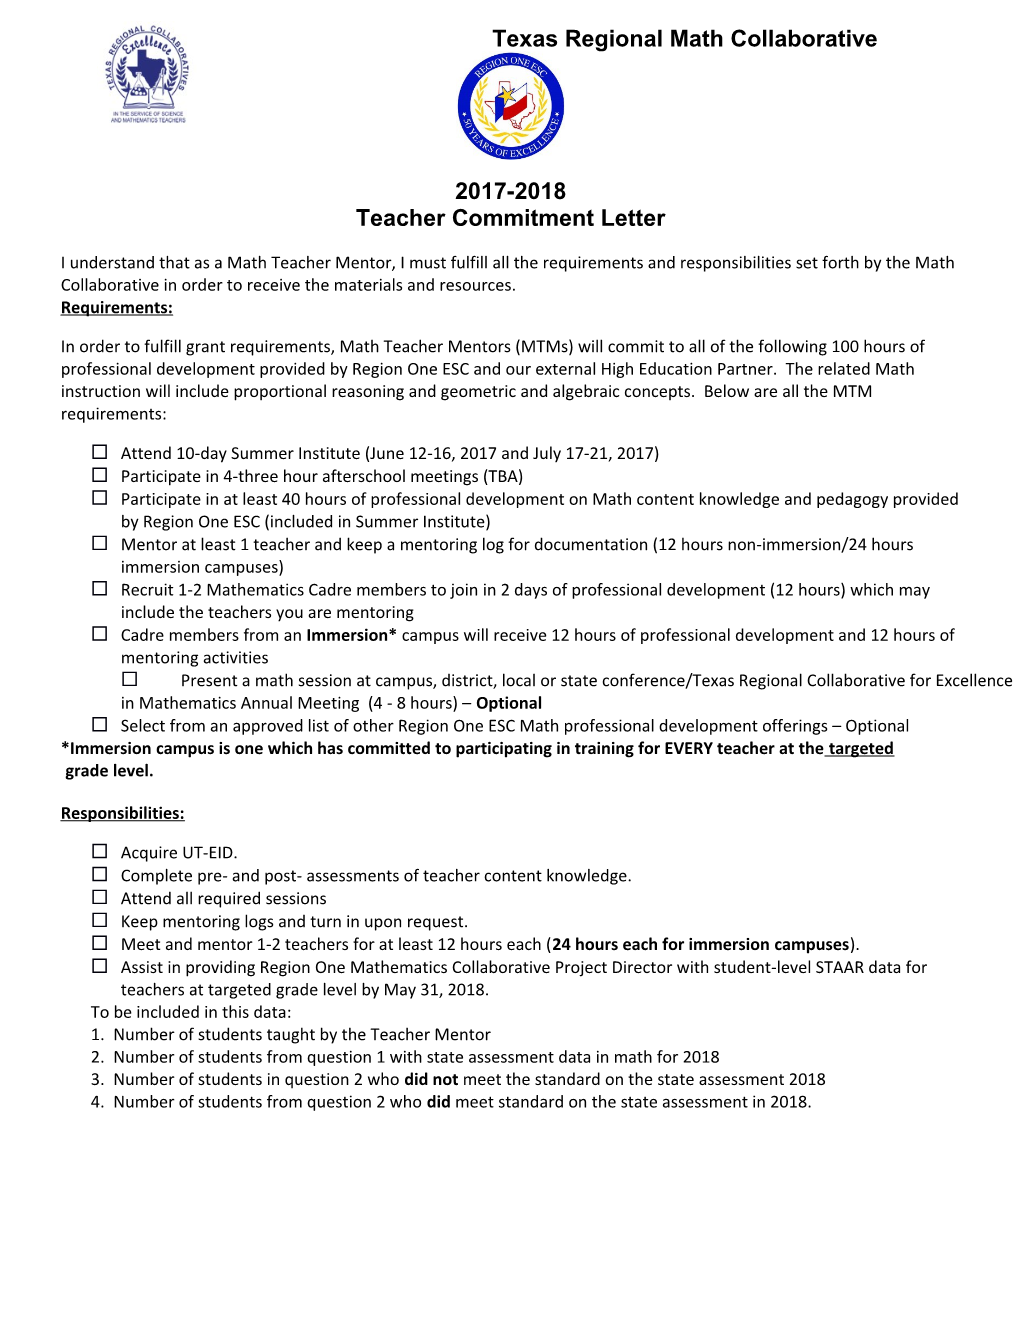 Teacher Commitment Letter